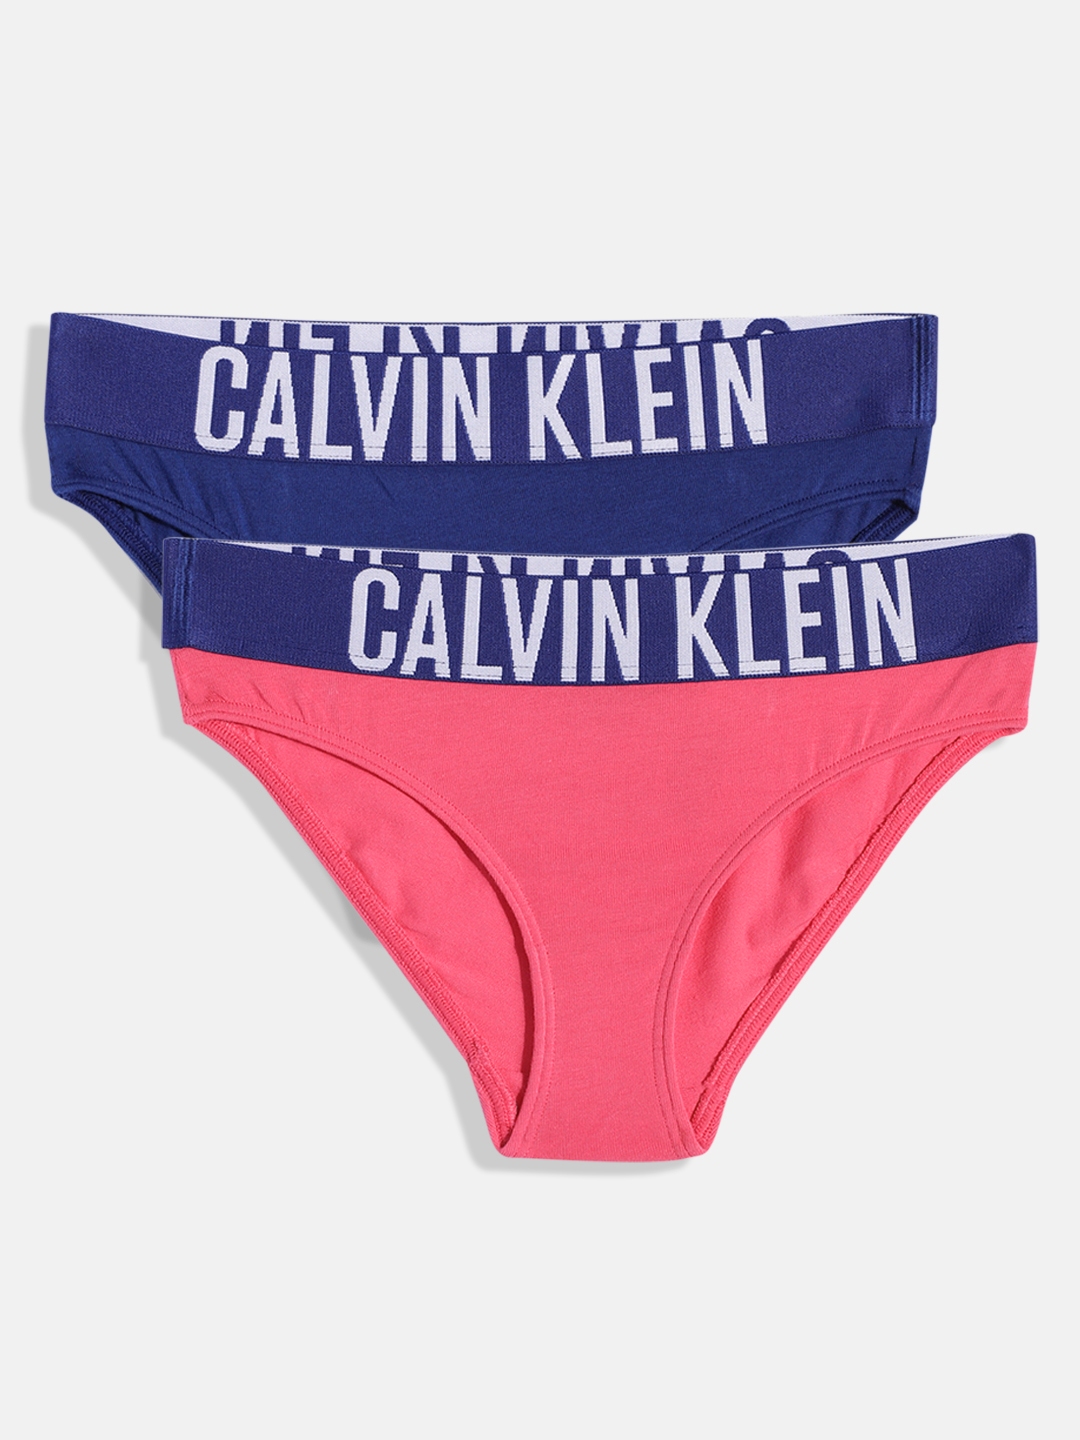 Buy Disney 6-in-1 Pack Bikini Panties Underwear For Kids Girls